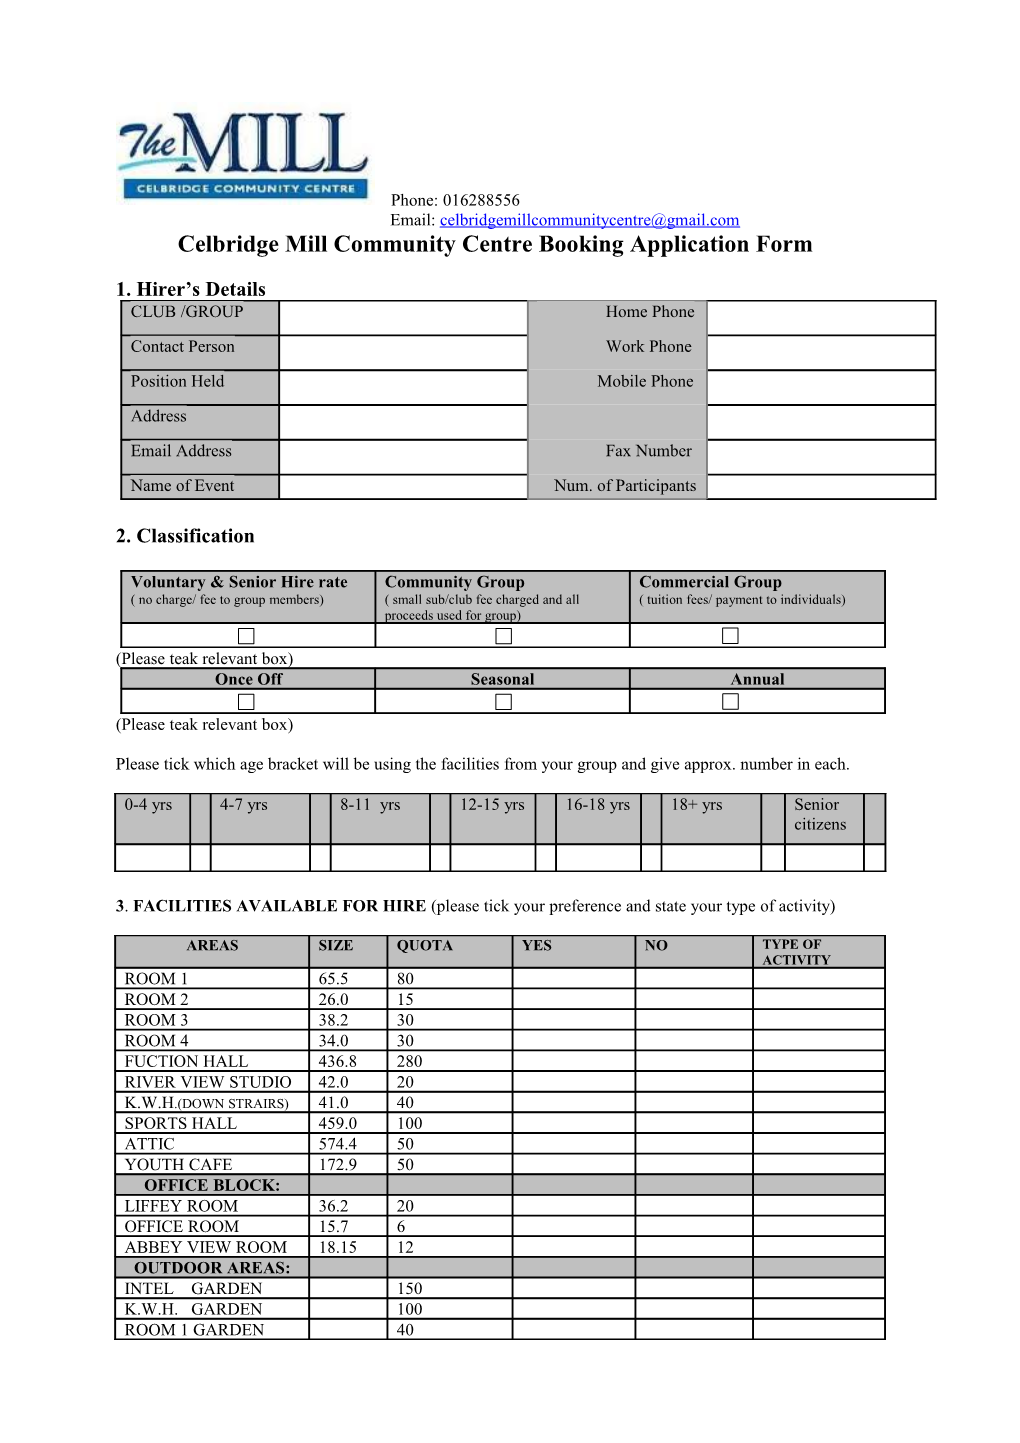 Celbridge Mill Community Centre Booking Application Form